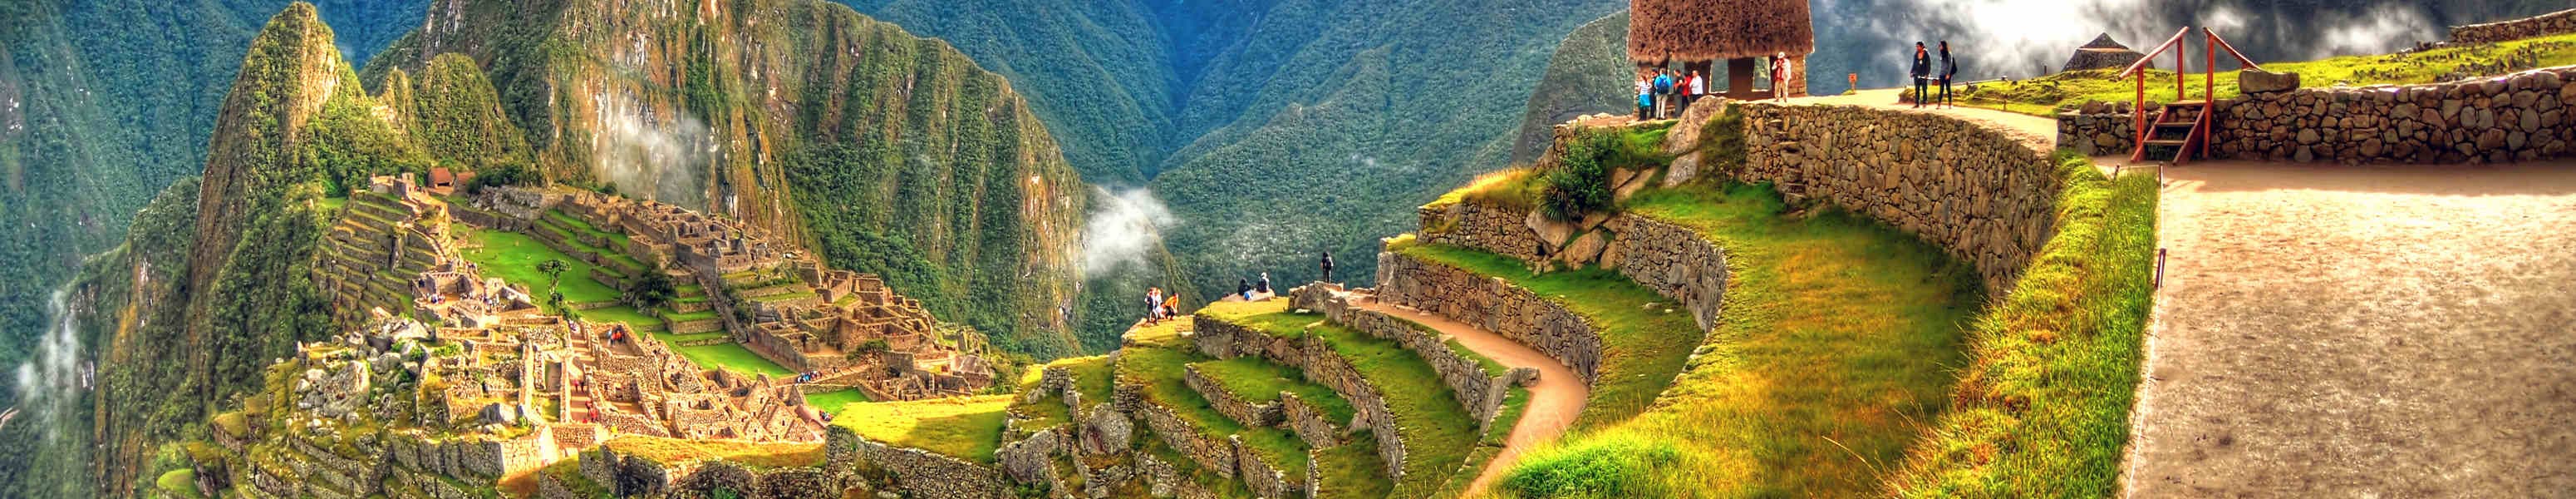 Tipy na výlety v Peru